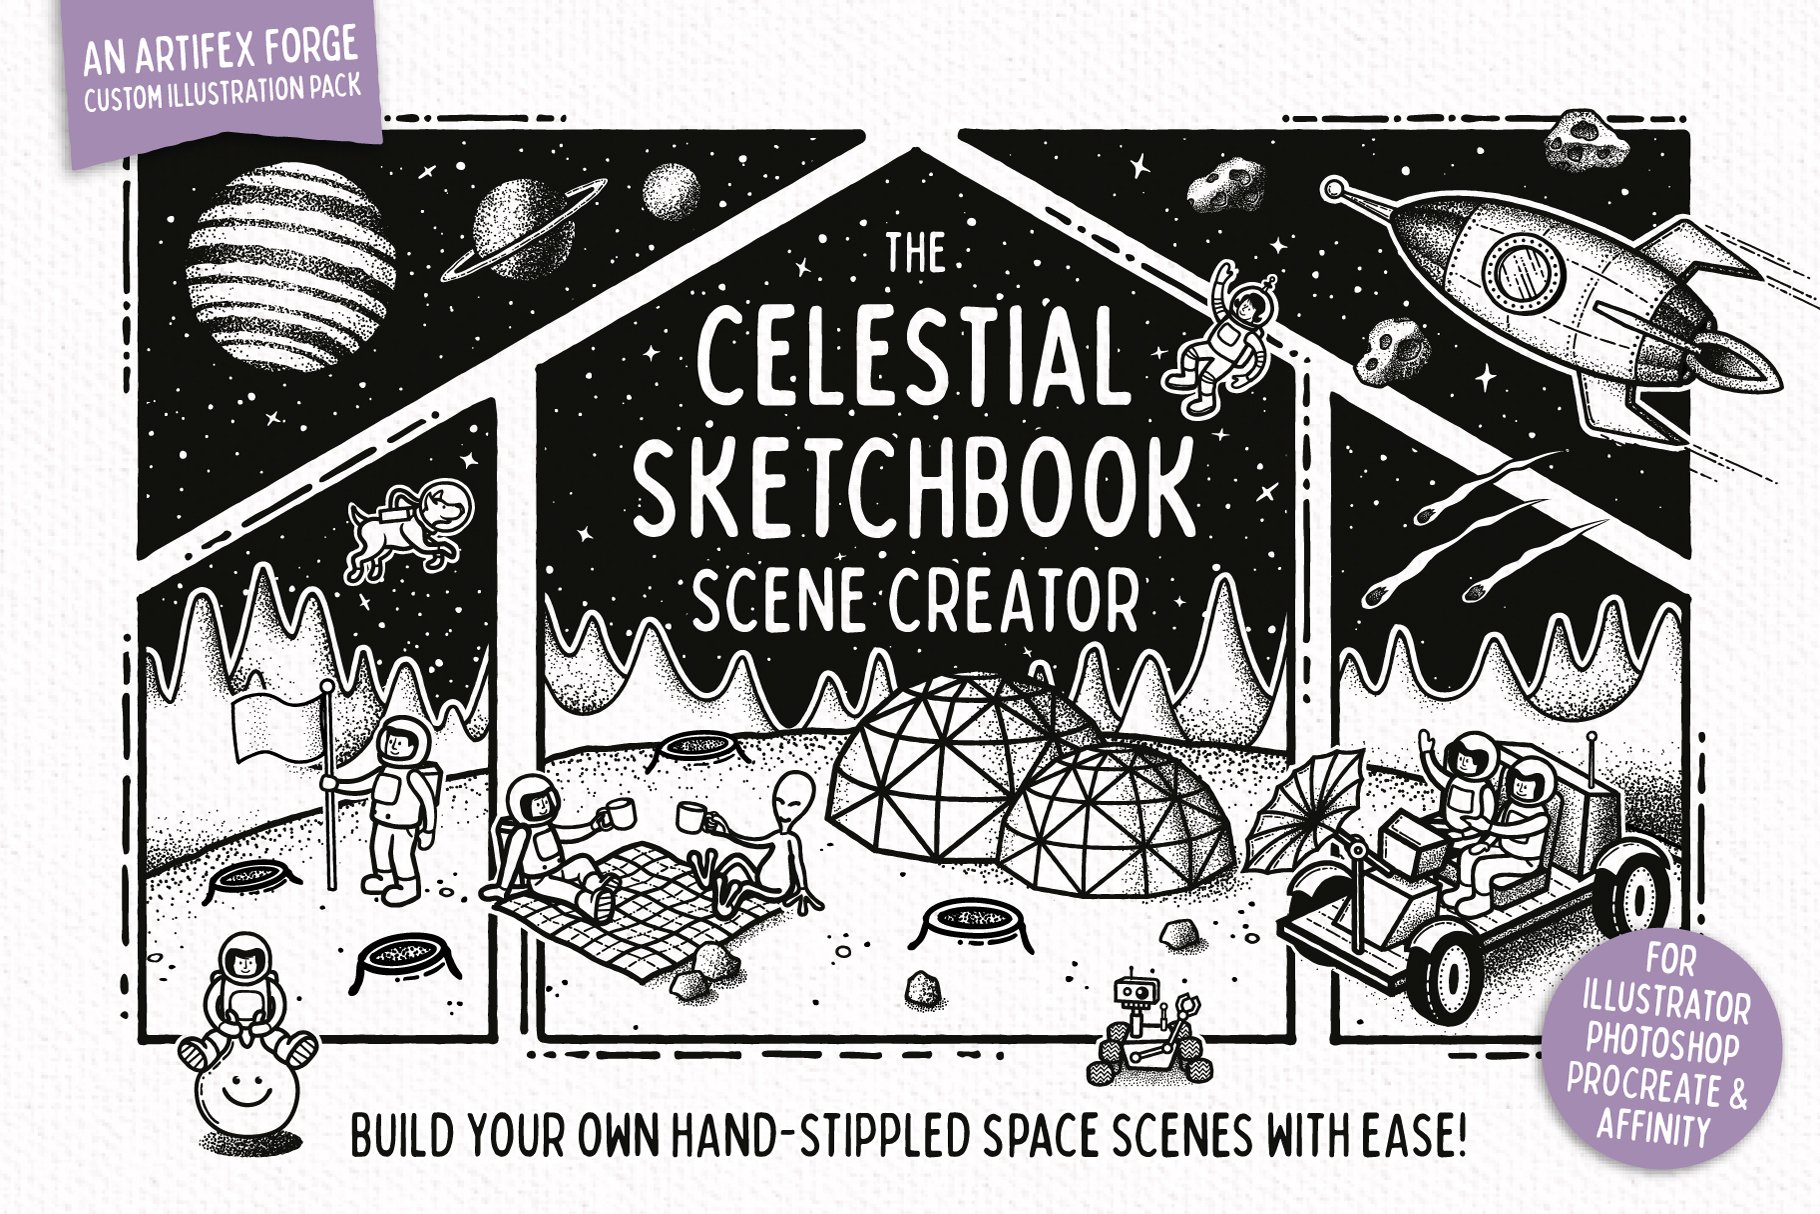 Celestial Sketchbook - Scene Creator cover image.